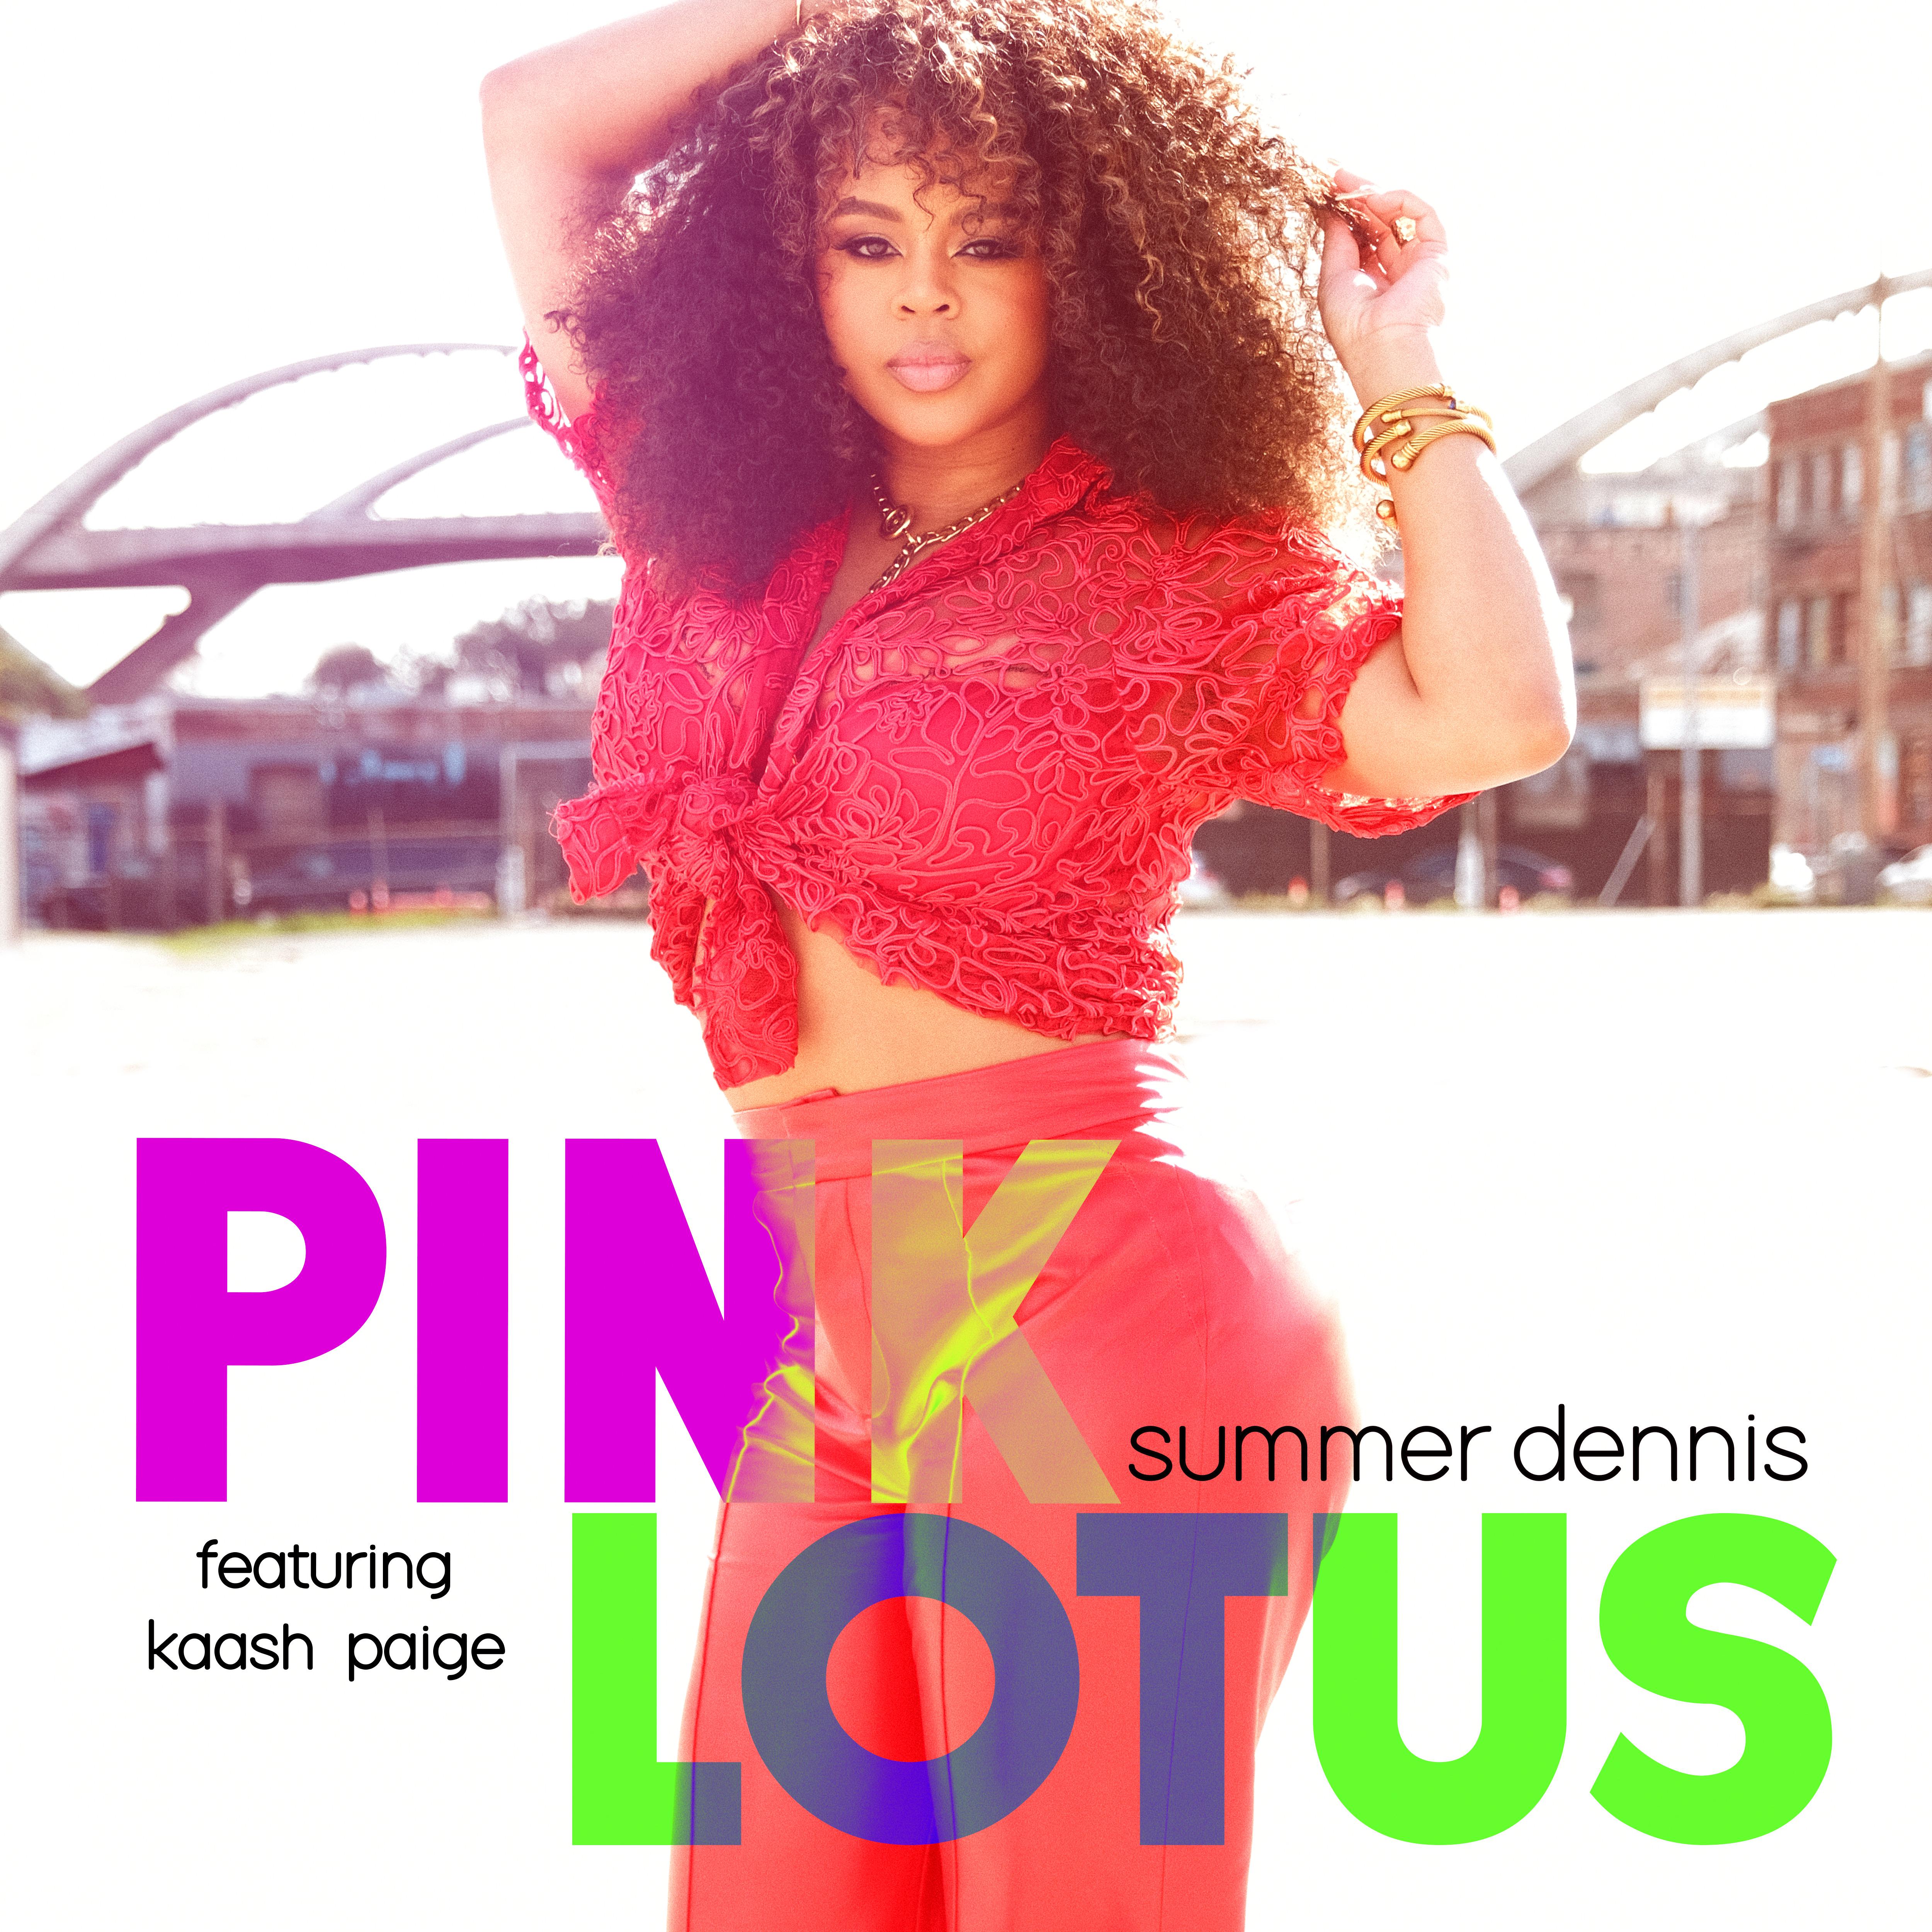 Summer Dennis - Pink Lotus